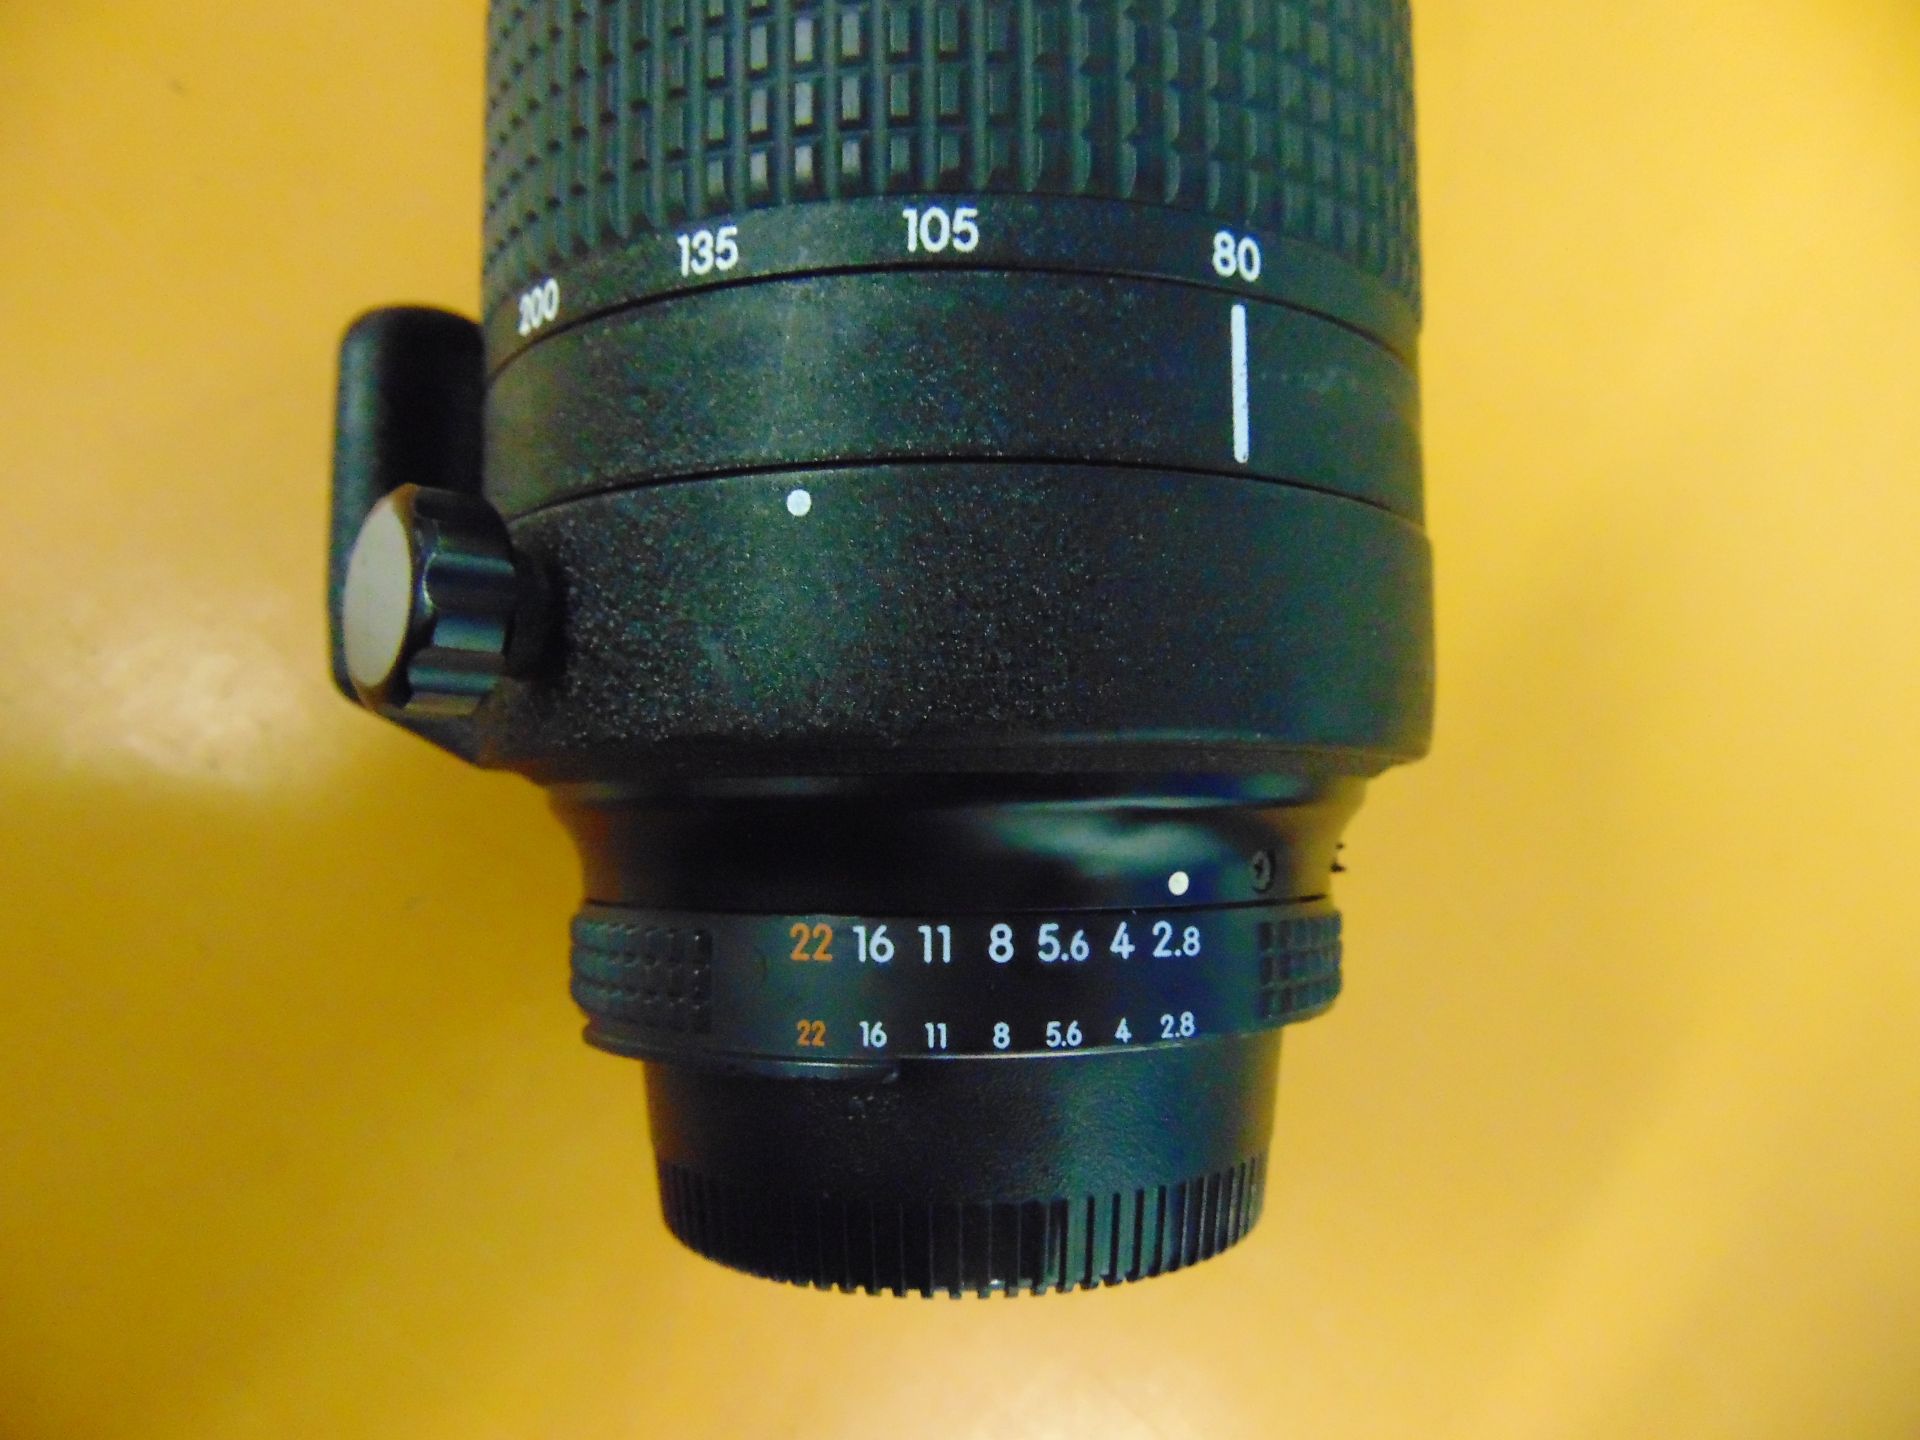 Nikon ED AF Nikkor 80-200mm 1:2.8 D Lense with Leather Carry Case - Bild 4 aus 8